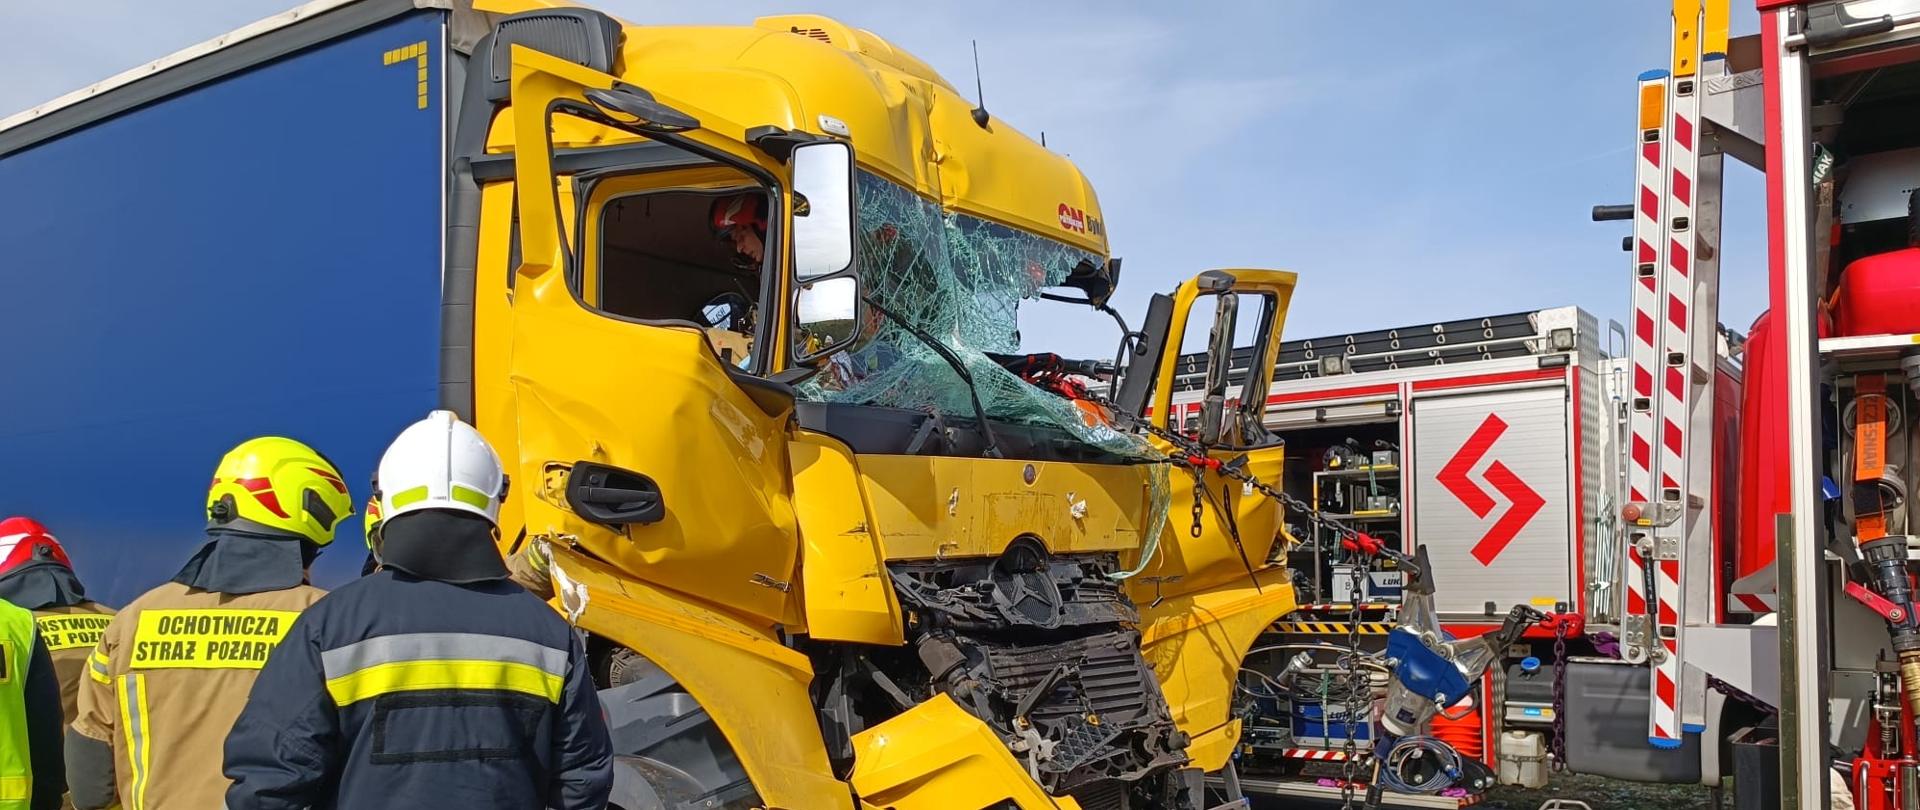 Wypadek dwóch pojazdów ciężarowych na autostradzie A4